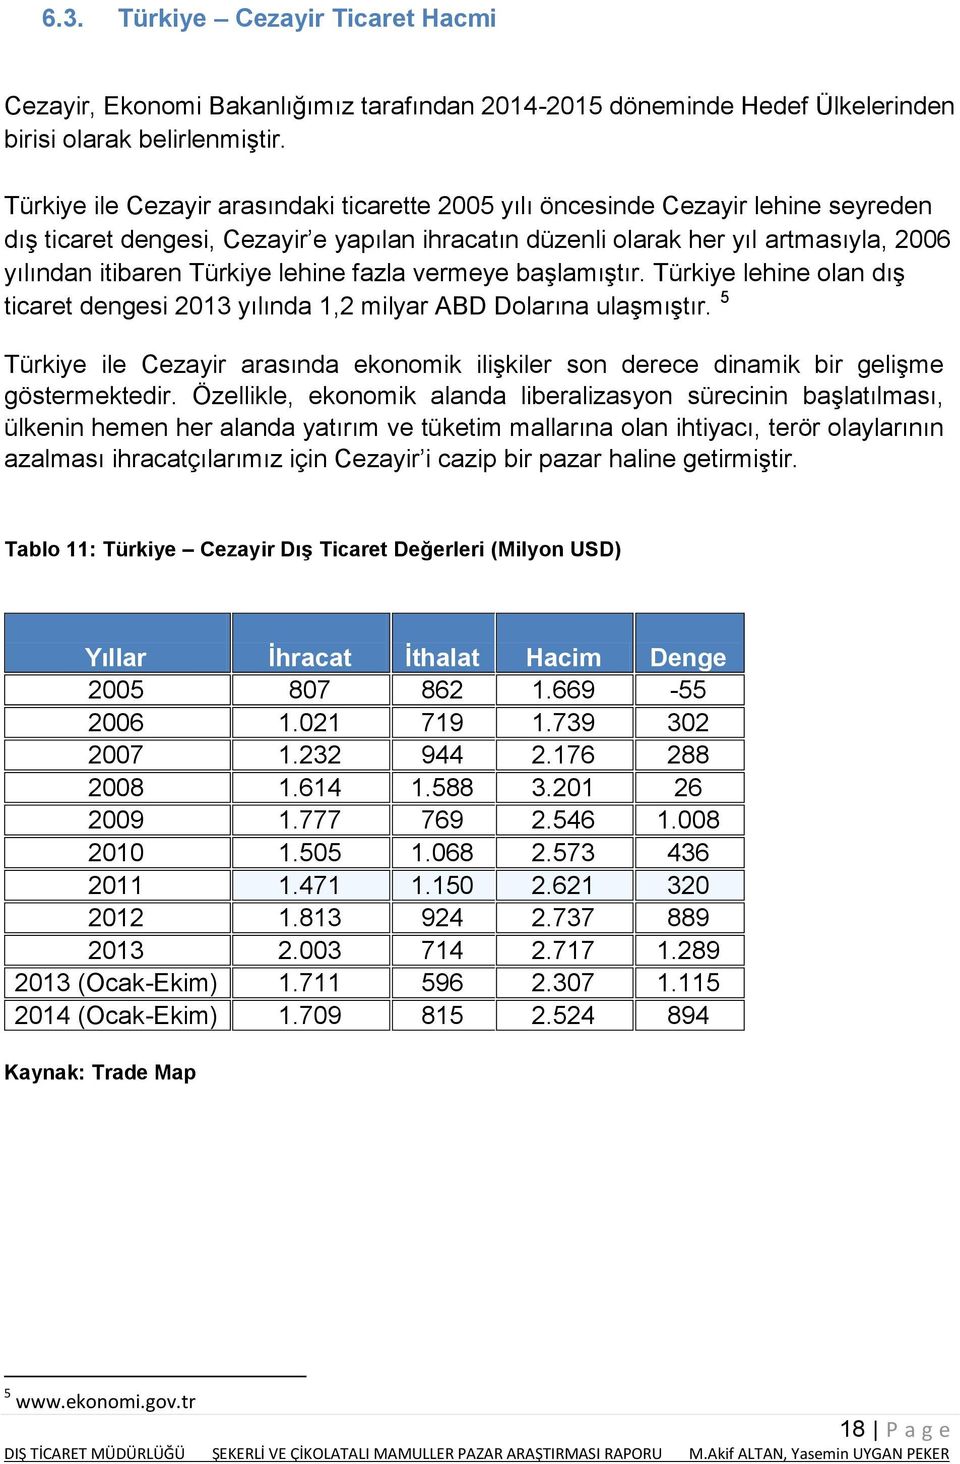 lehine fazla vermeye başlamıştır. Türkiye lehine olan dış ticaret dengesi 2013 yılında 1,2 milyar ABD Dolarına ulaşmıştır.